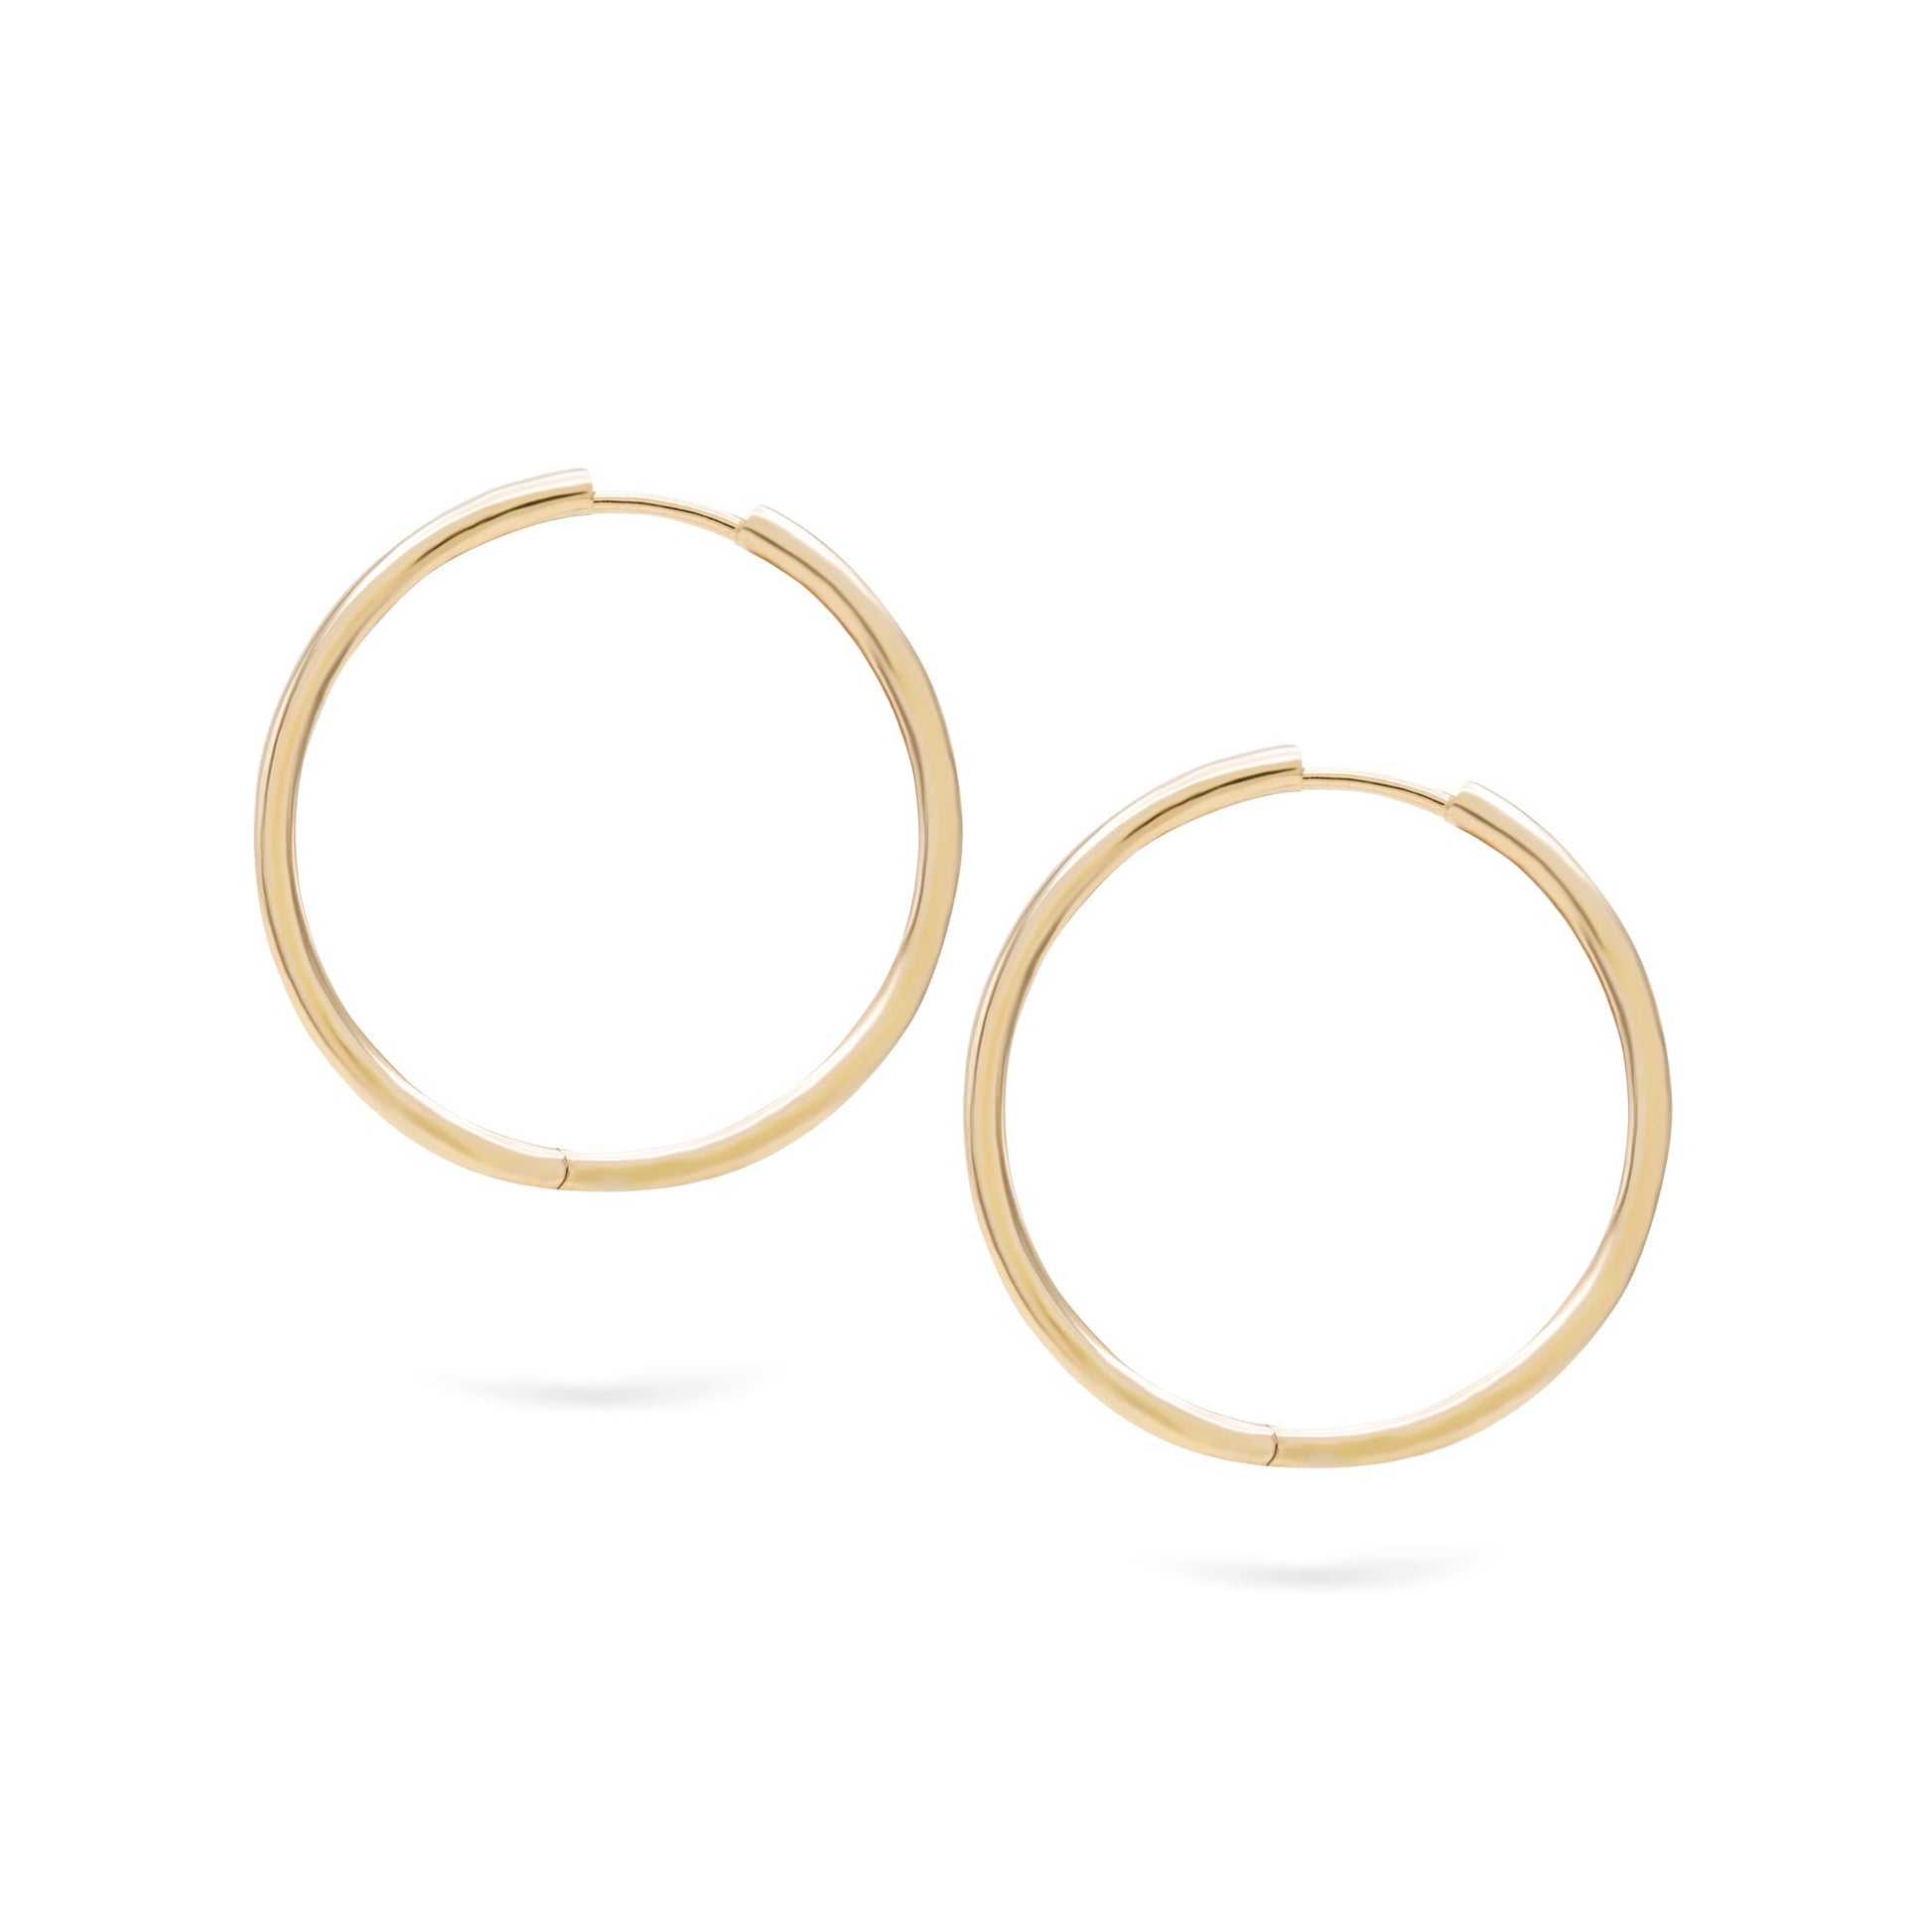 Jewelry ’s Classic Hoops | Gold Earrings | 14K - Yellow / 3 cm Pair - earrings Zengoda Shop online from